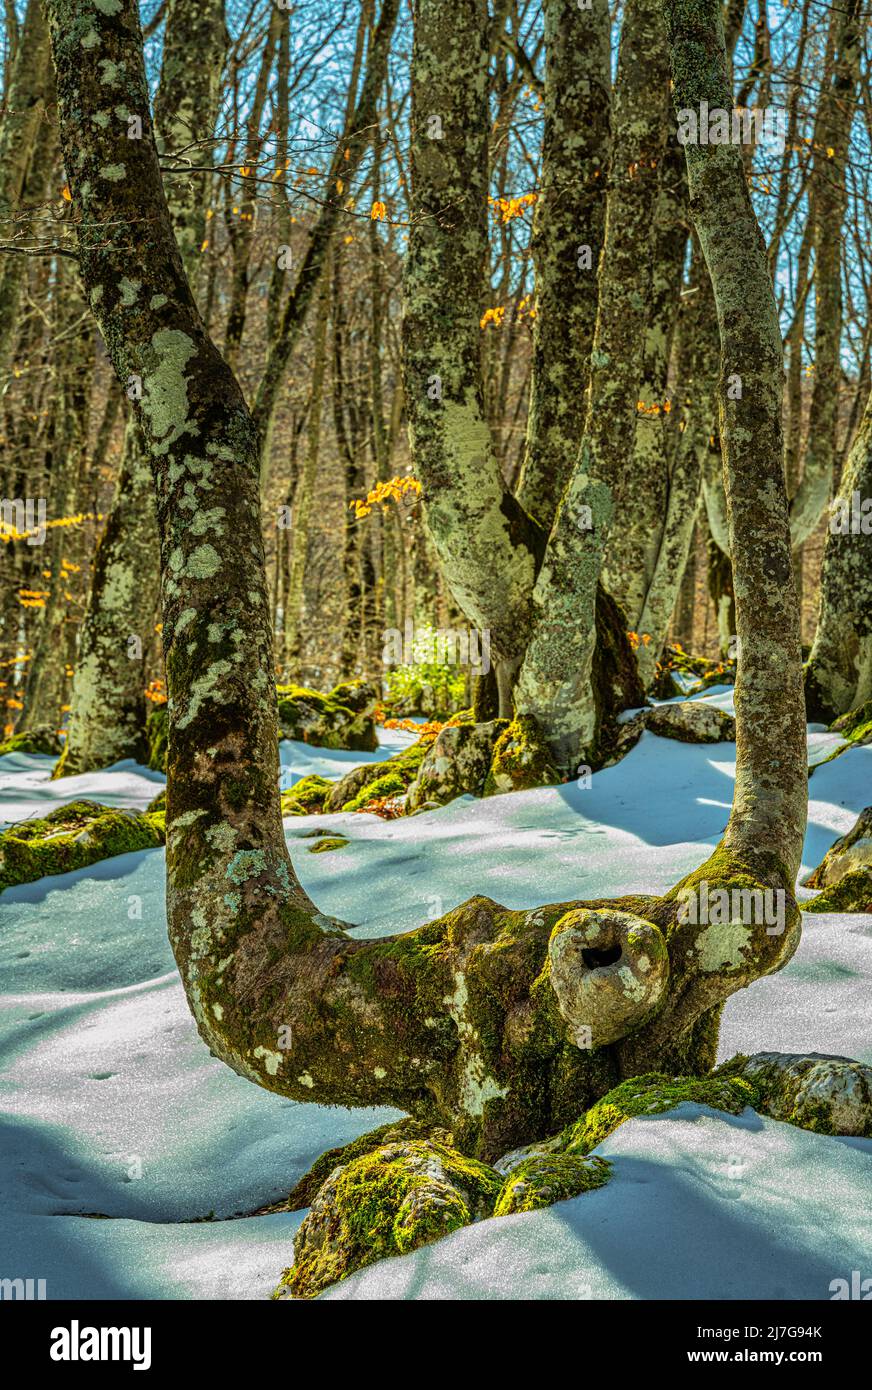 Beech trees, bare of leaves, in a snowy landscape. Bosco di Sant'Antonio nature reserve, Pescocostanzo, province of l'Aquila, Abruzzo, Italy, Europe Stock Photo